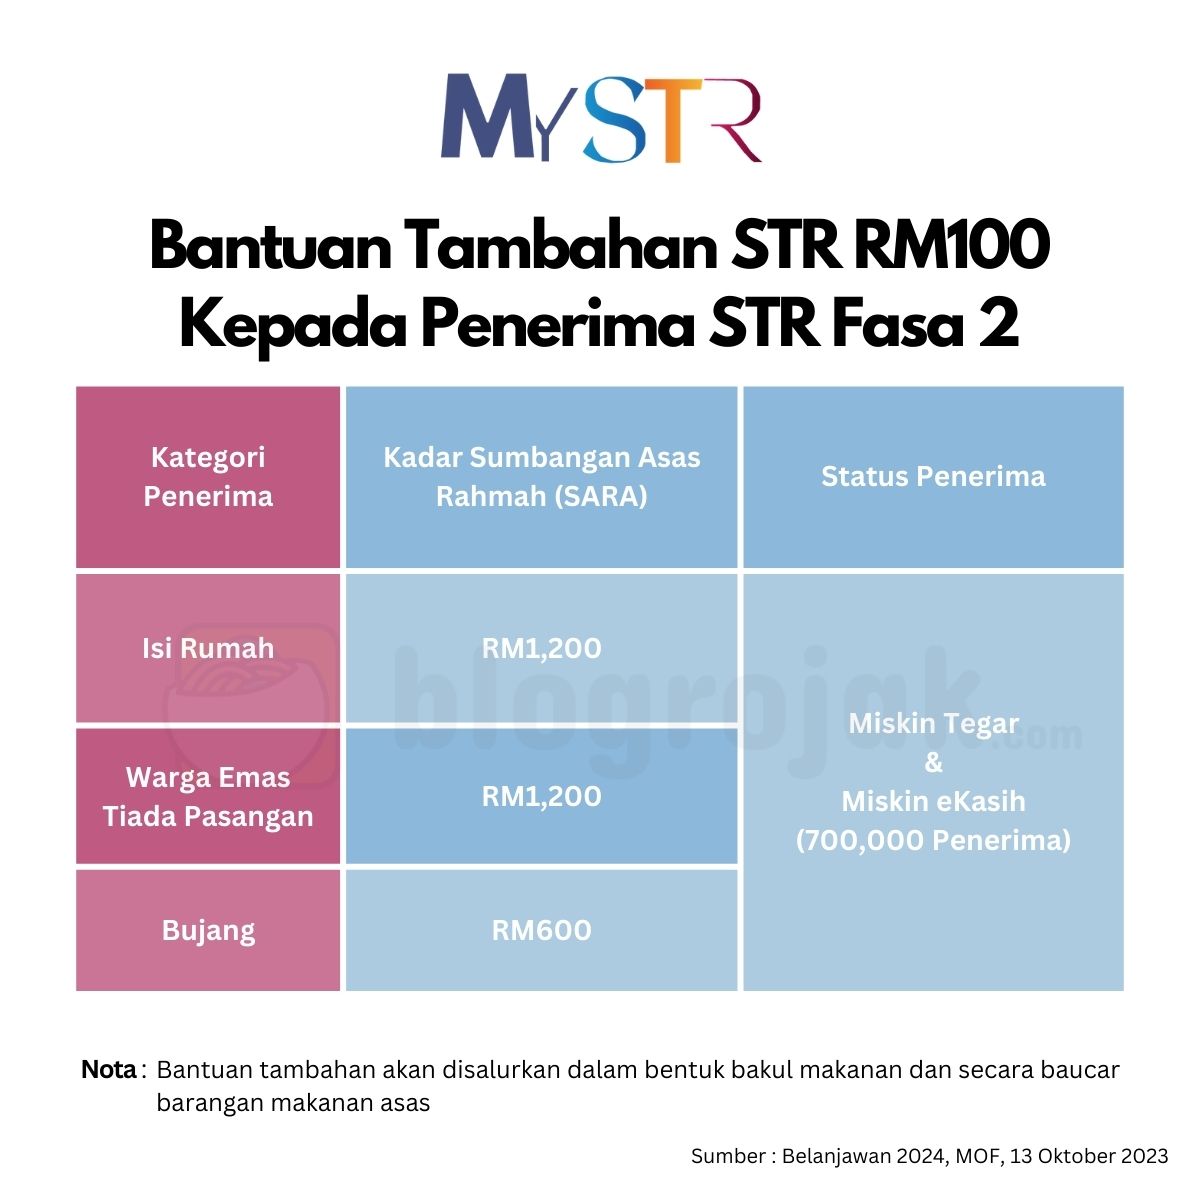 Bantuan Tambahan STR RM100 Kepada Penerima STR Fasa 2